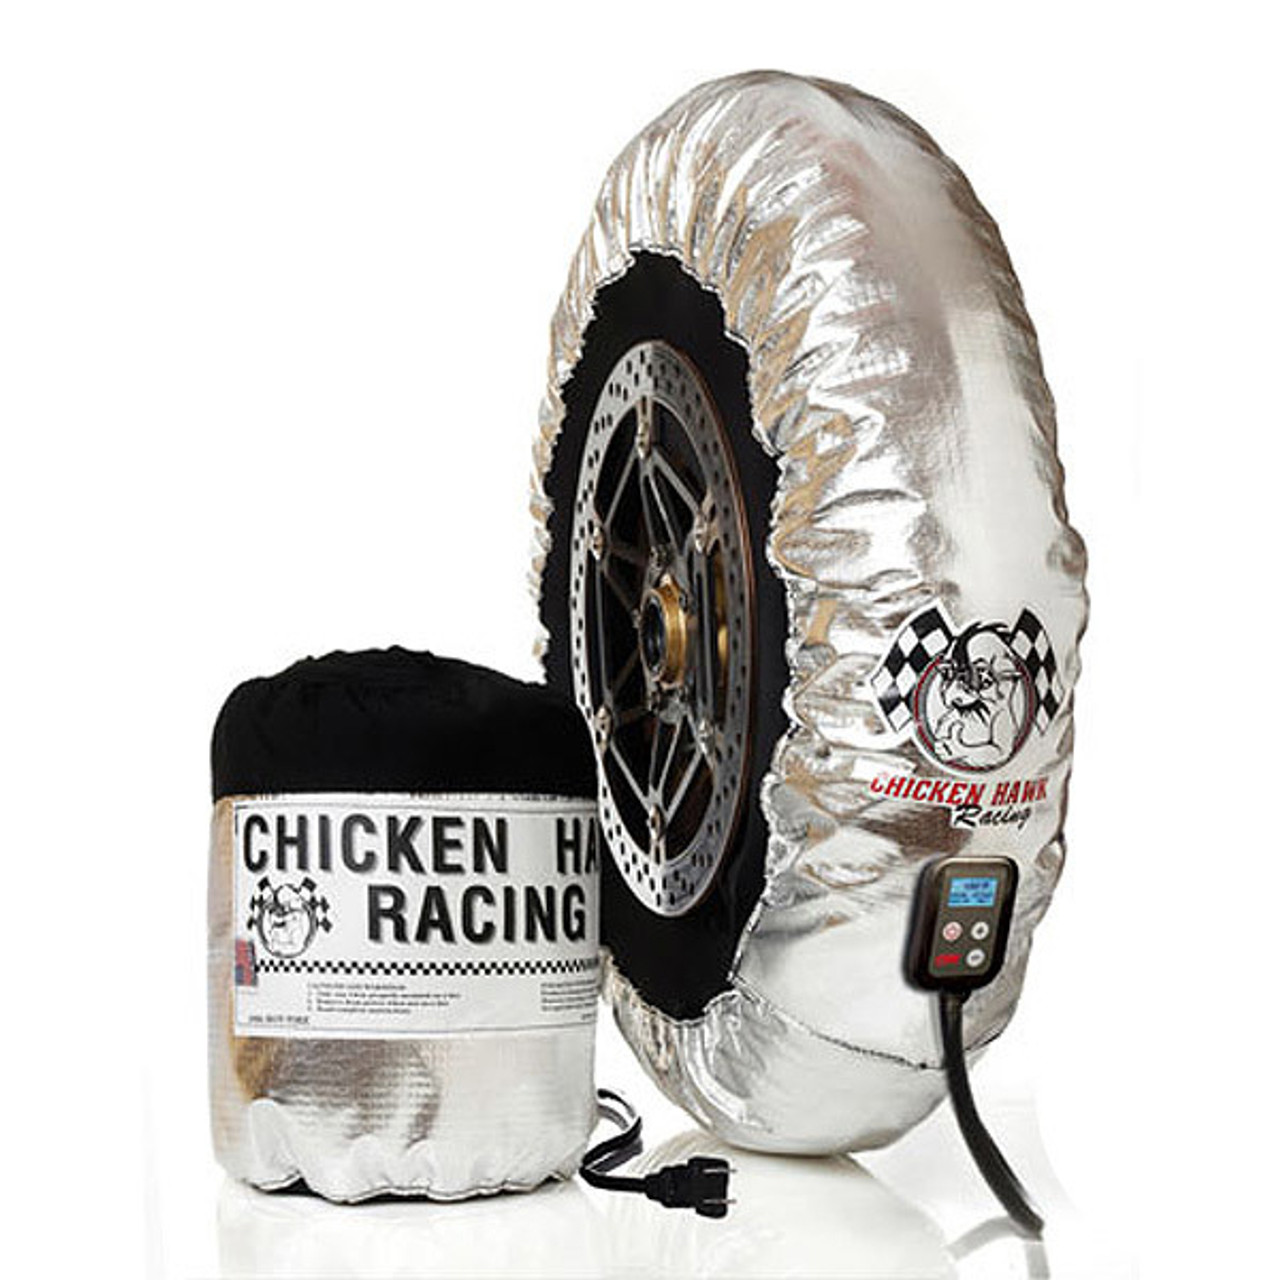 Chicken Hawk Racing Classic Pro-Line Tire Warmers - Sportbike Track Gear